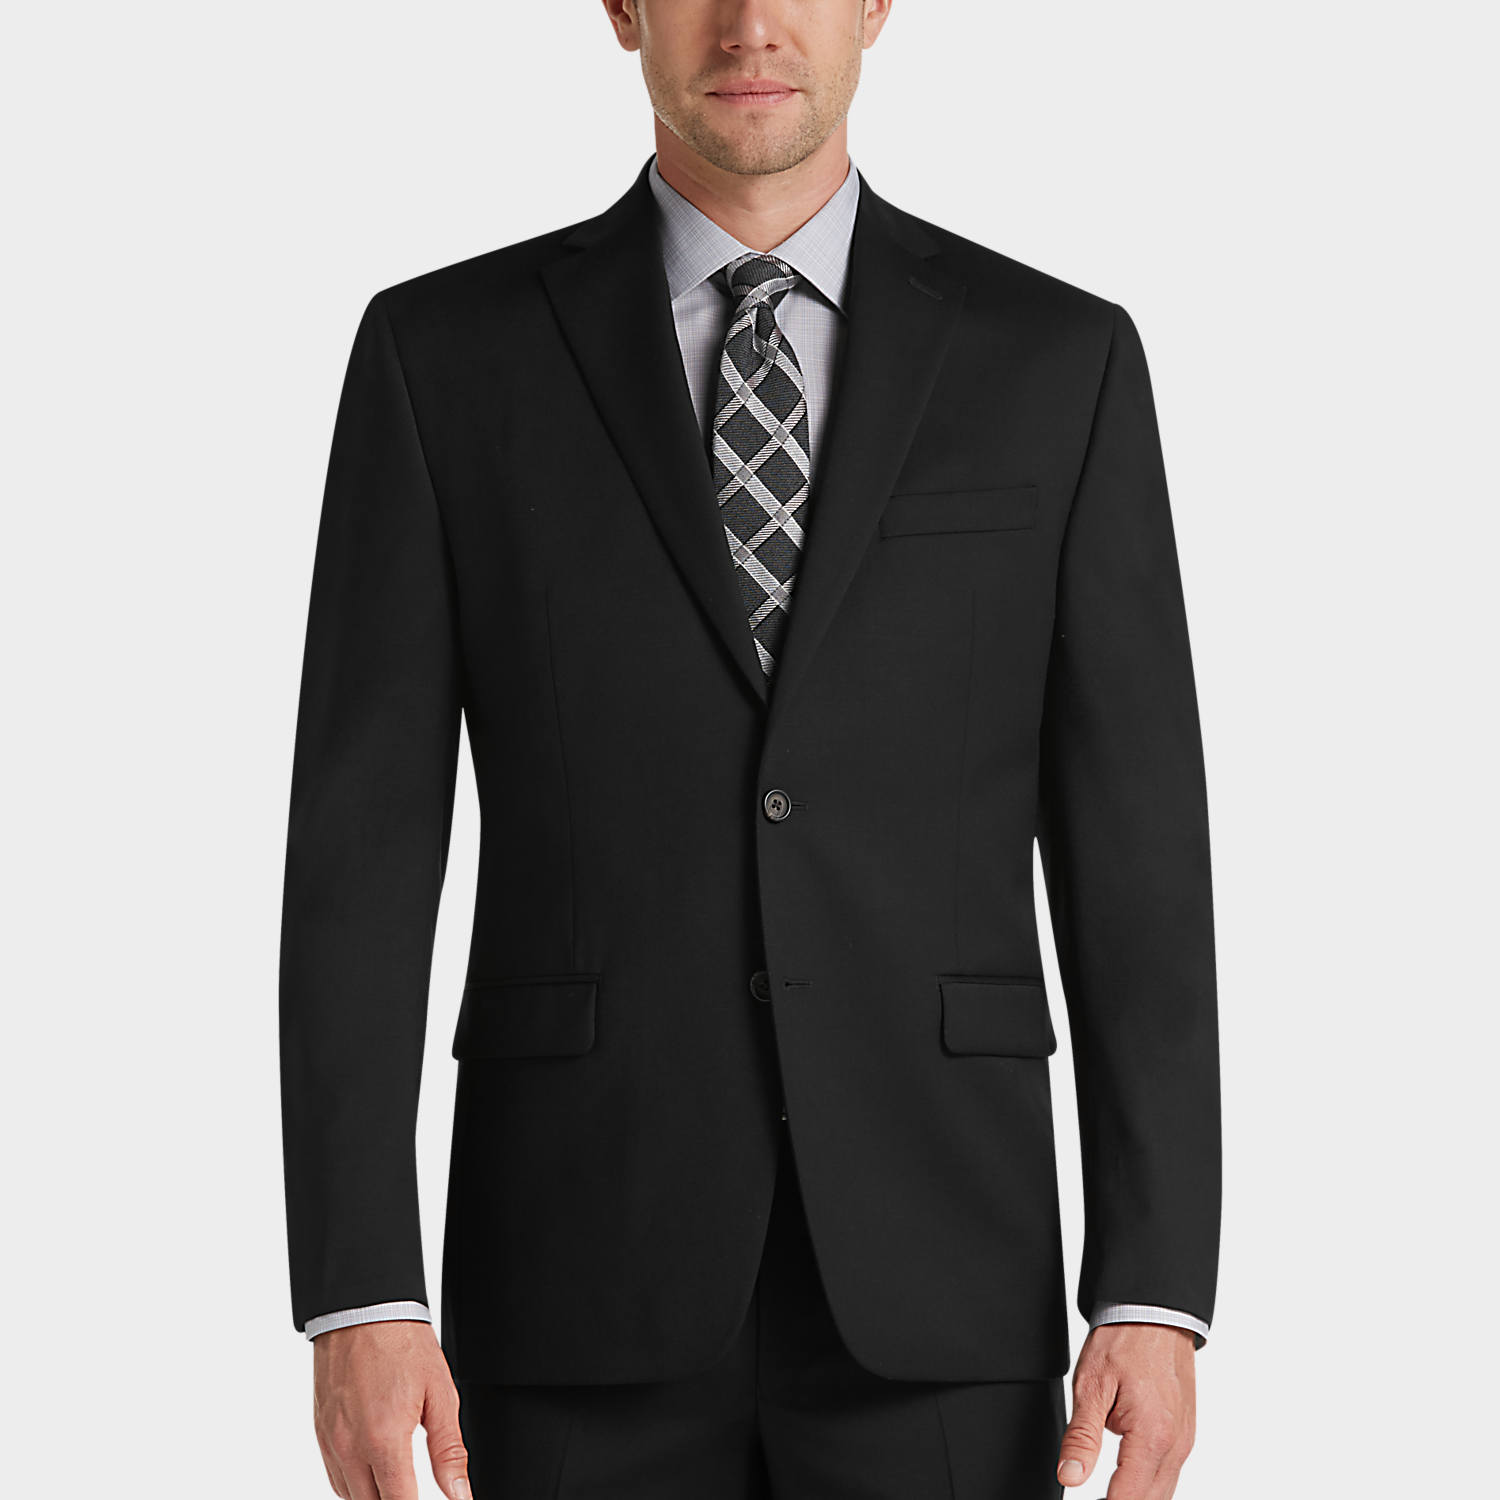 Black Suits - Shop for Men's Black Suits | Men's Wearhouse